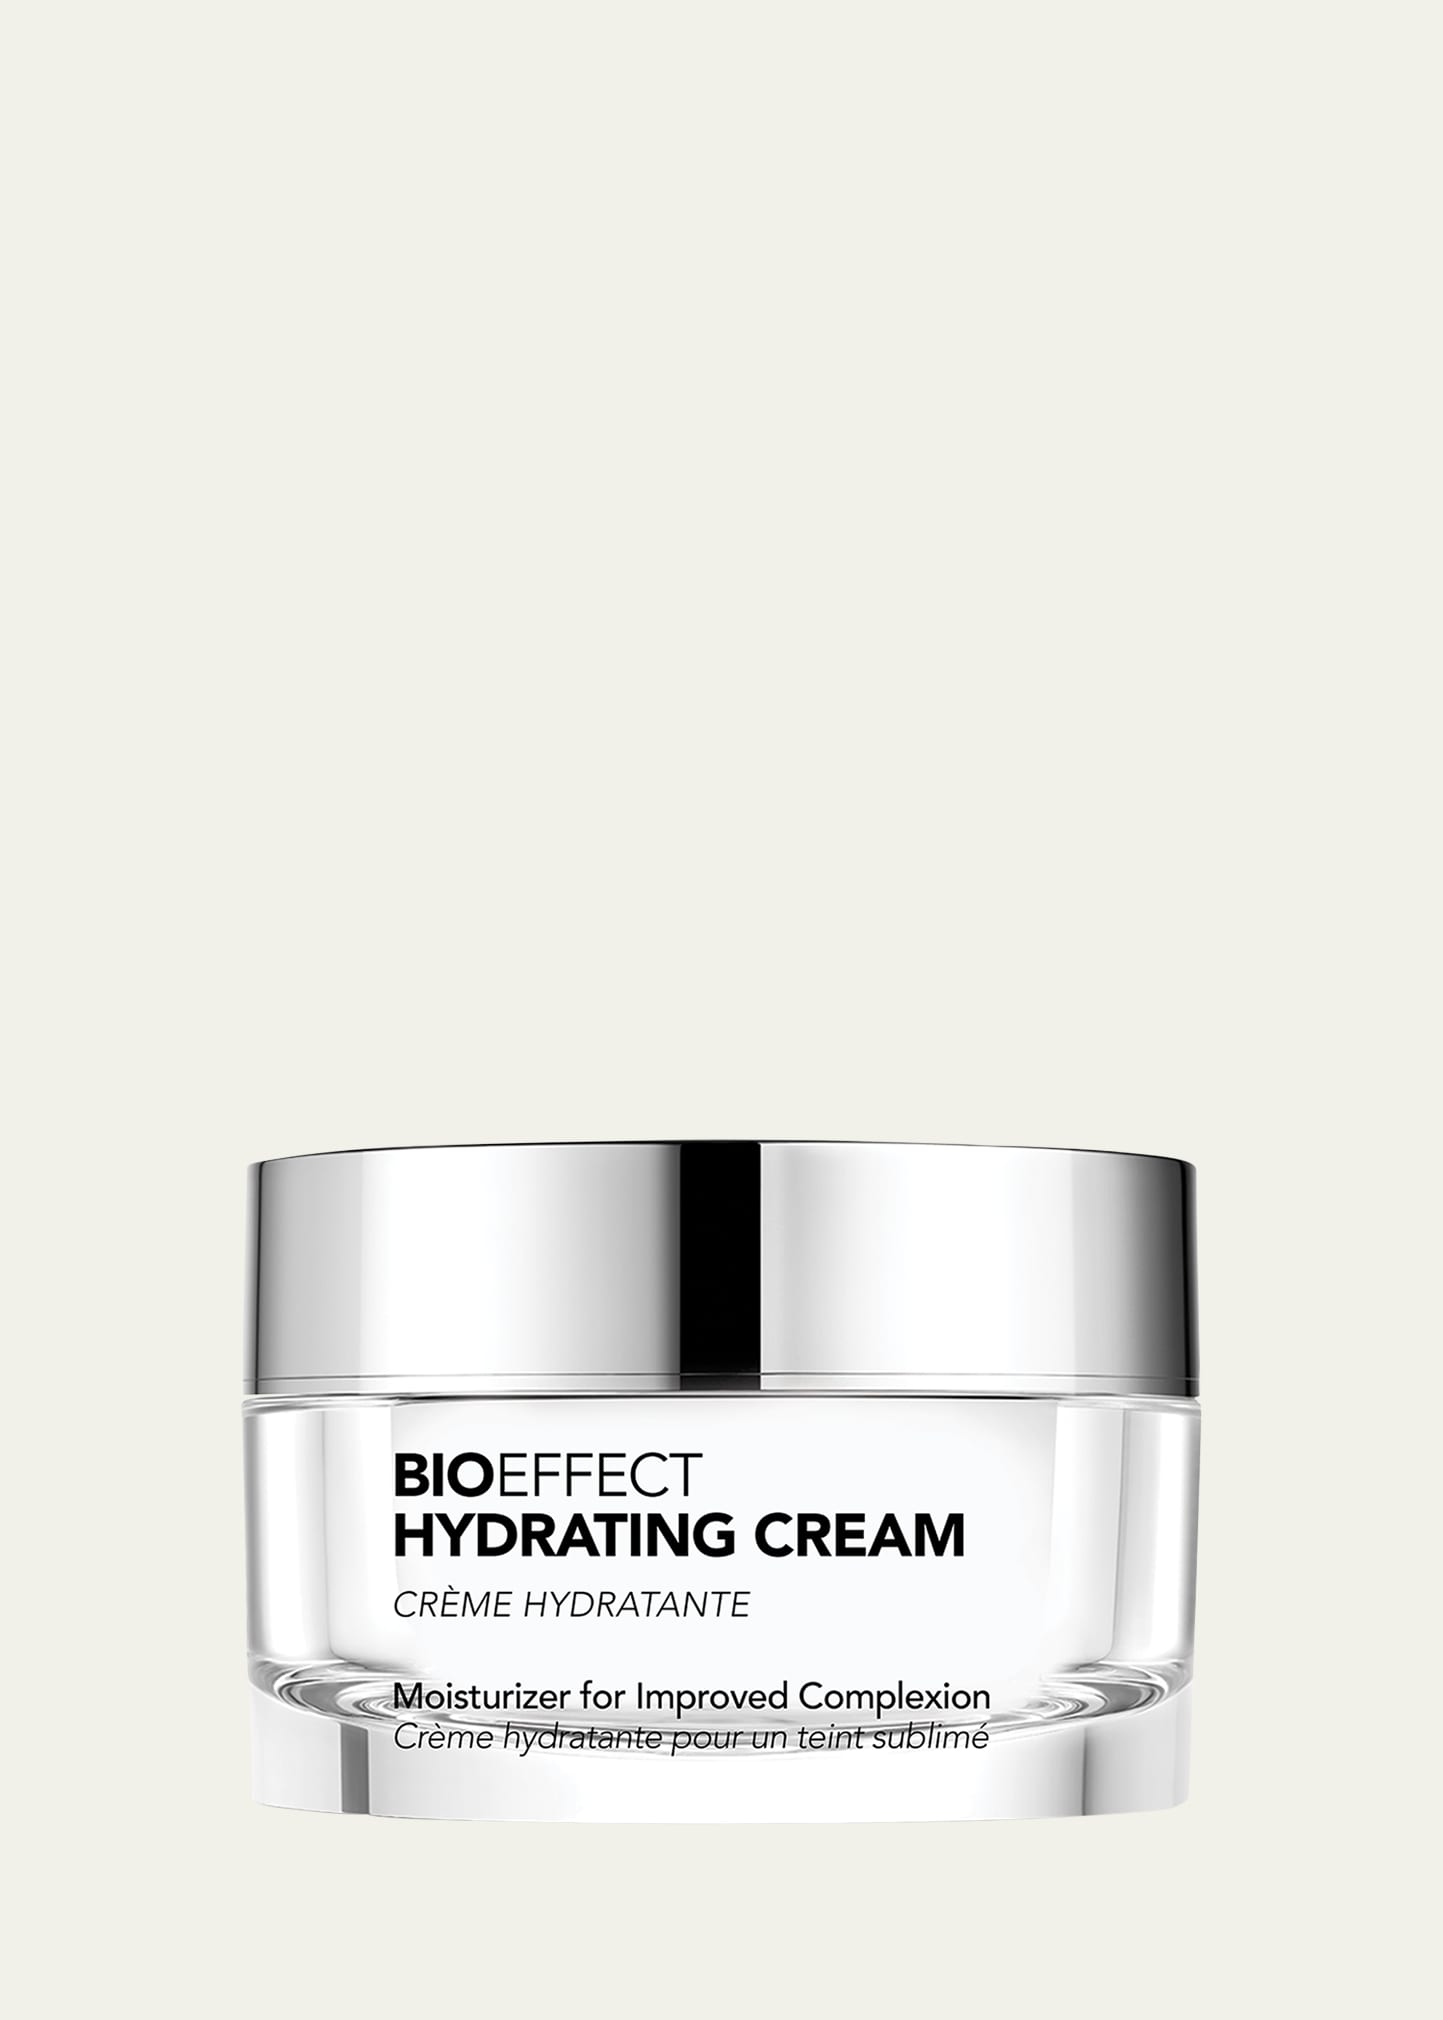 BIOEFFECT Hydrating Cream, 1.7 oz.